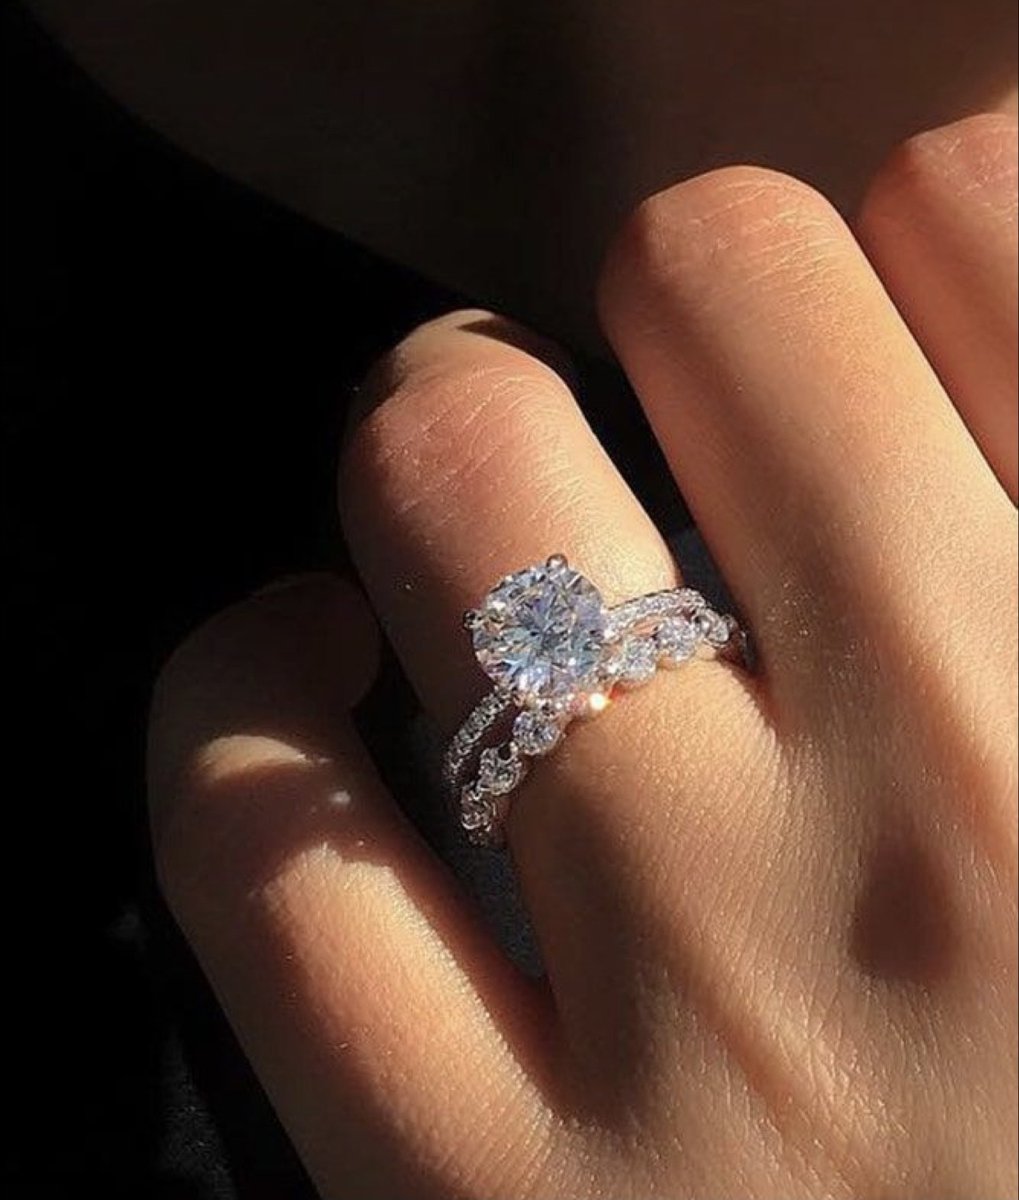 Обручальные кольца с бриллиантами женские на руке